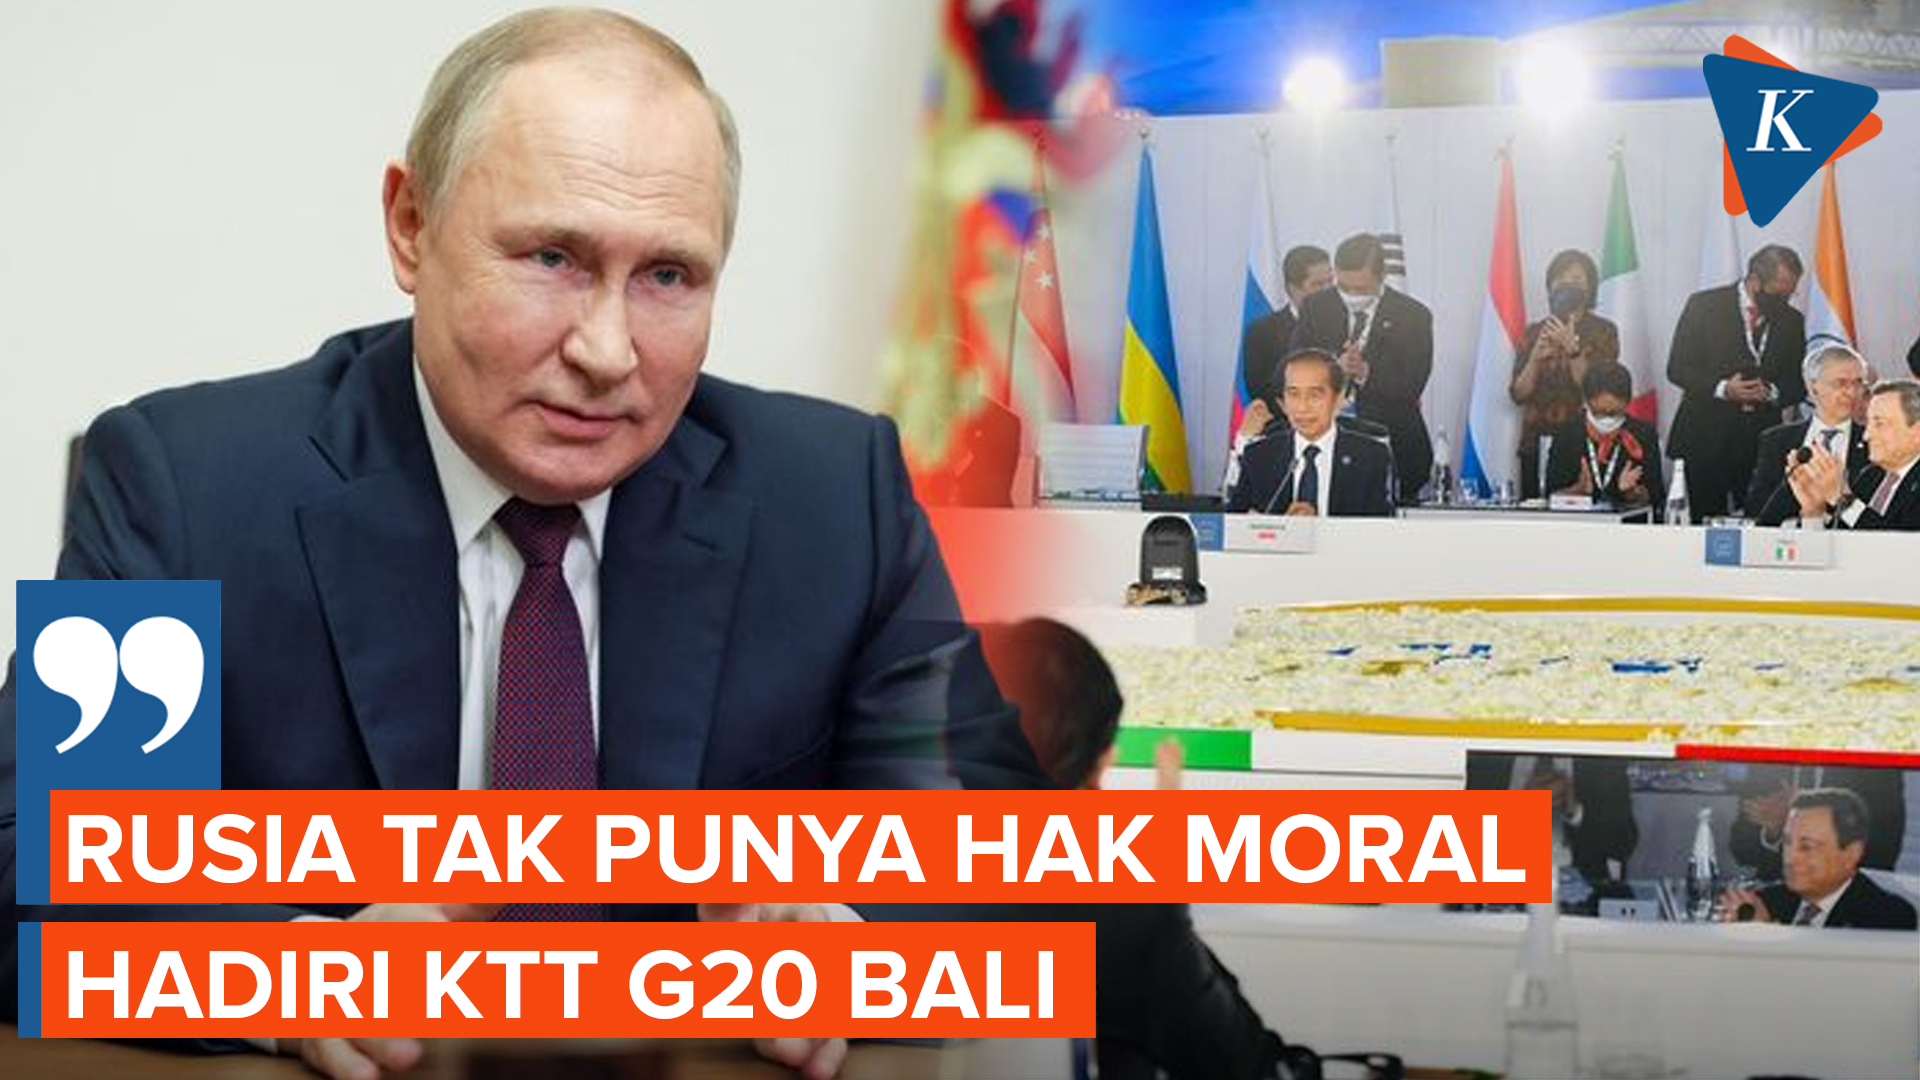 Komentar Inggris Usai Jokowi Pastikan Putin Hadiri KTT G20 Bali